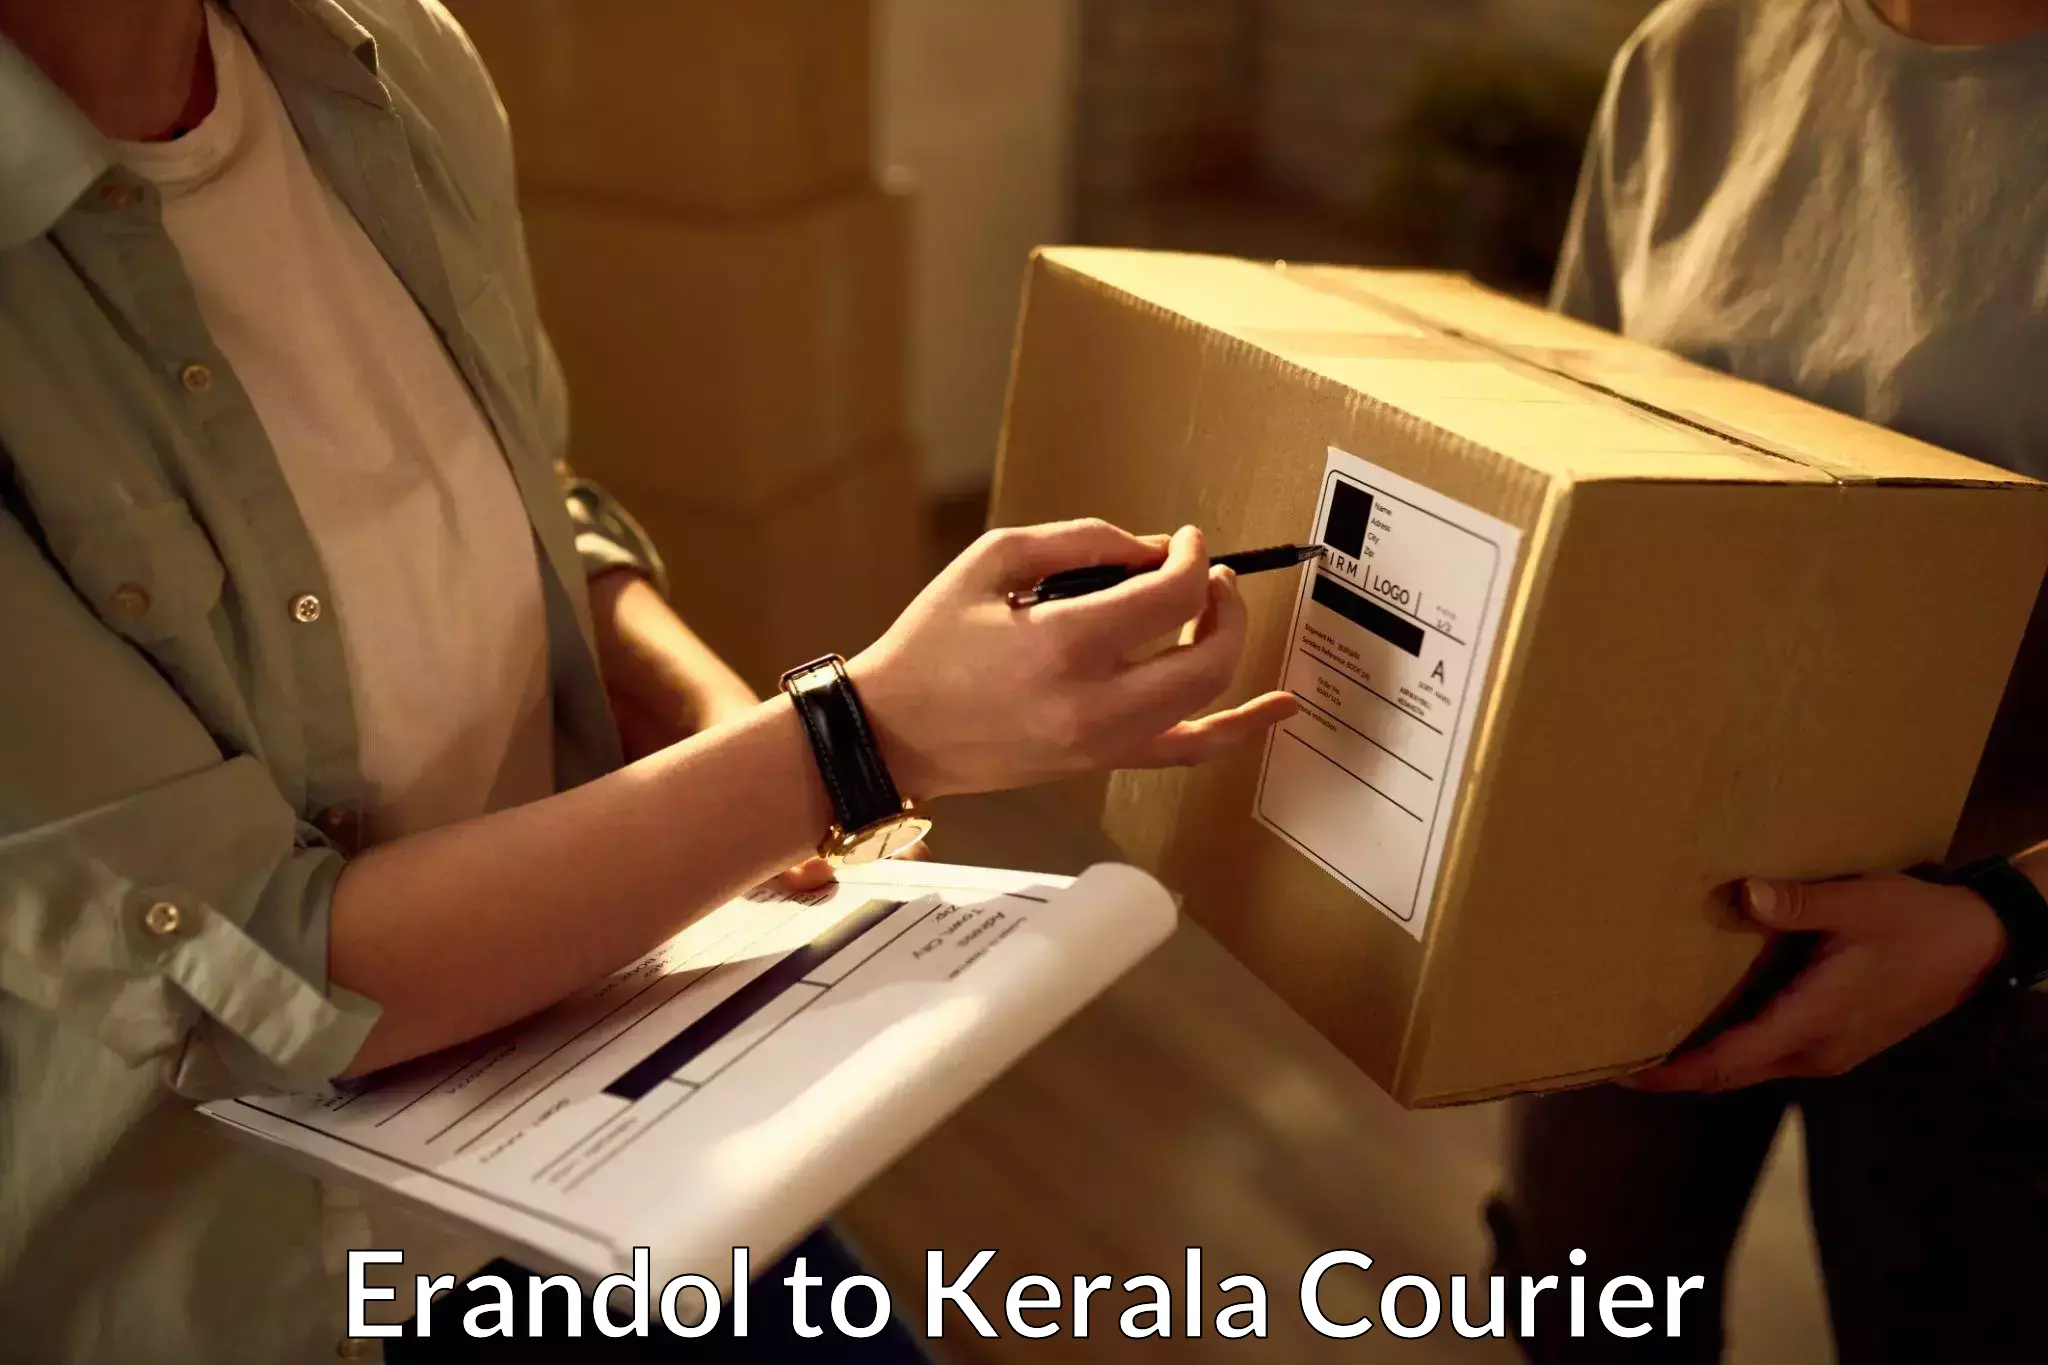 High-speed parcel service Erandol to Kuchi